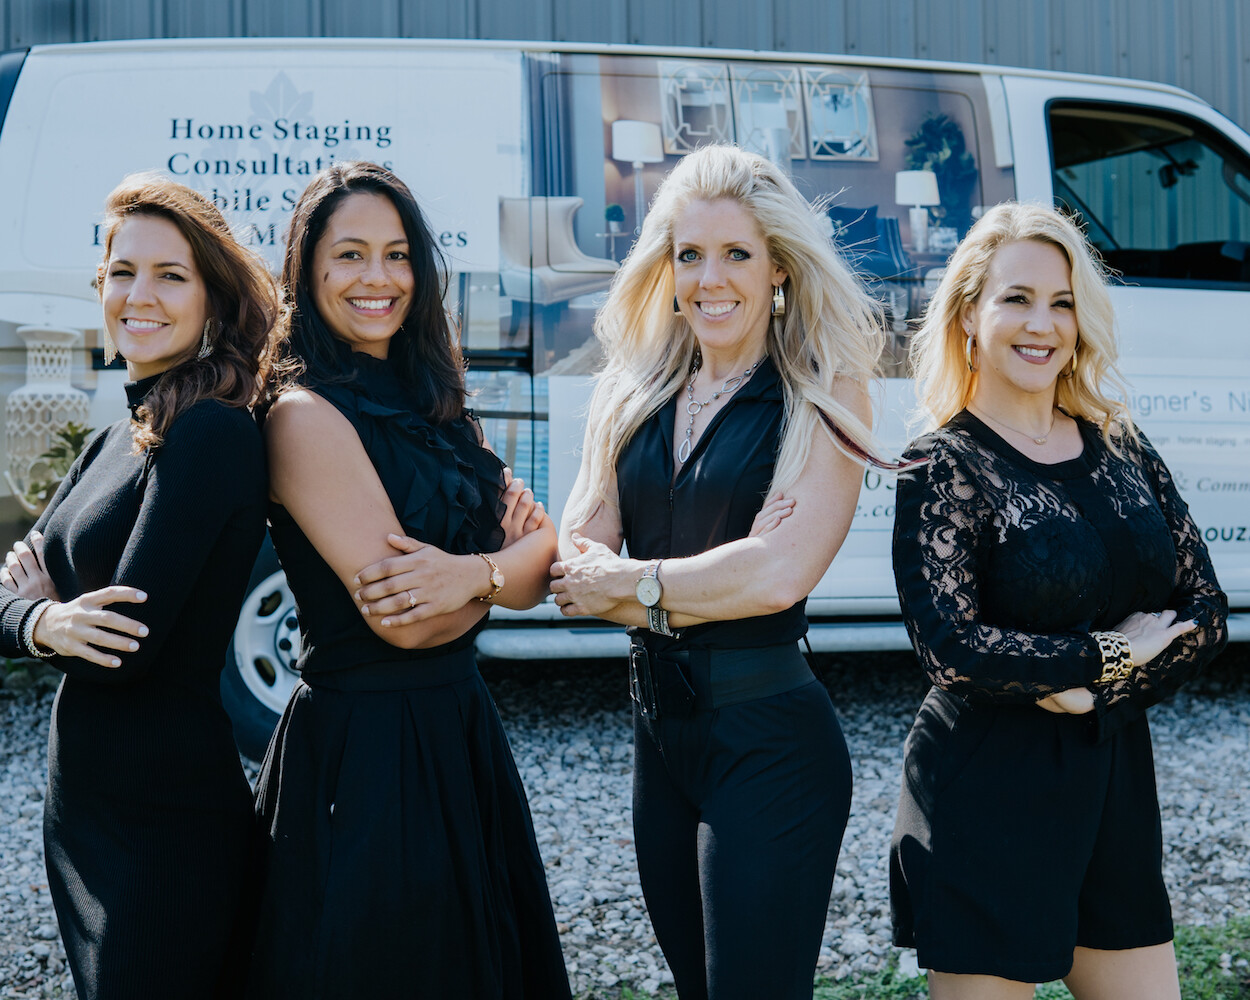 Four women standing in front of a van.